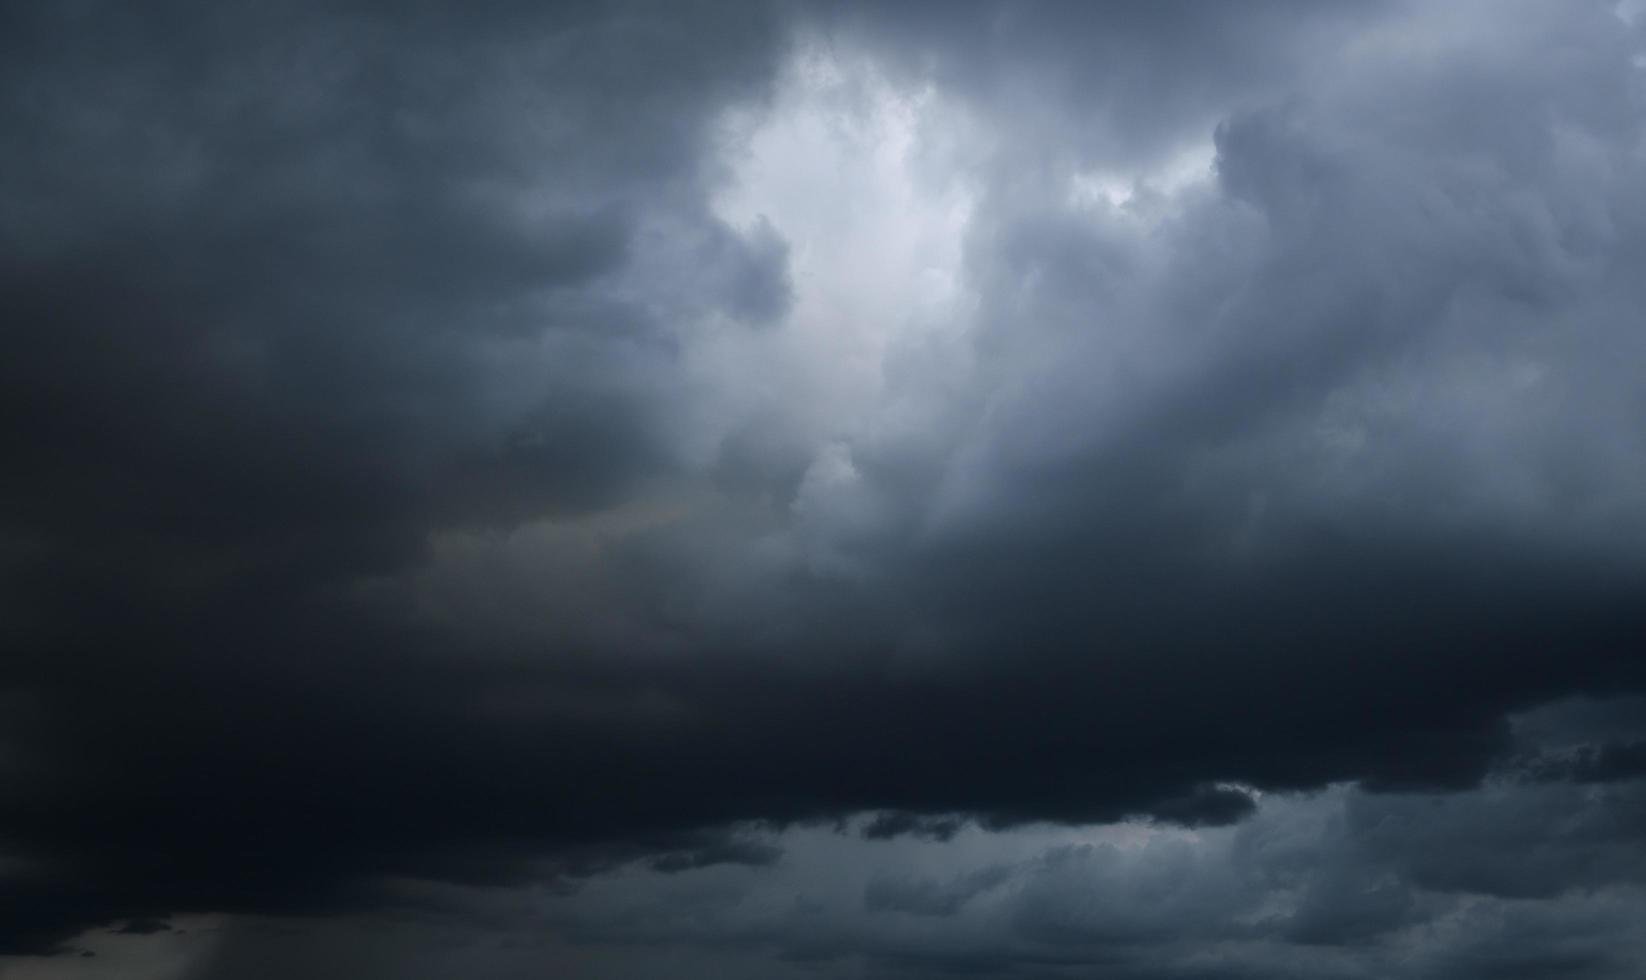 tempesta nuvole galleggiante nel un' piovoso giorno con naturale luce. Cloudscape scenario, nuvoloso tempo metereologico sopra blu cielo. bianca e grigio nuvole panoramico natura ambiente sfondo foto